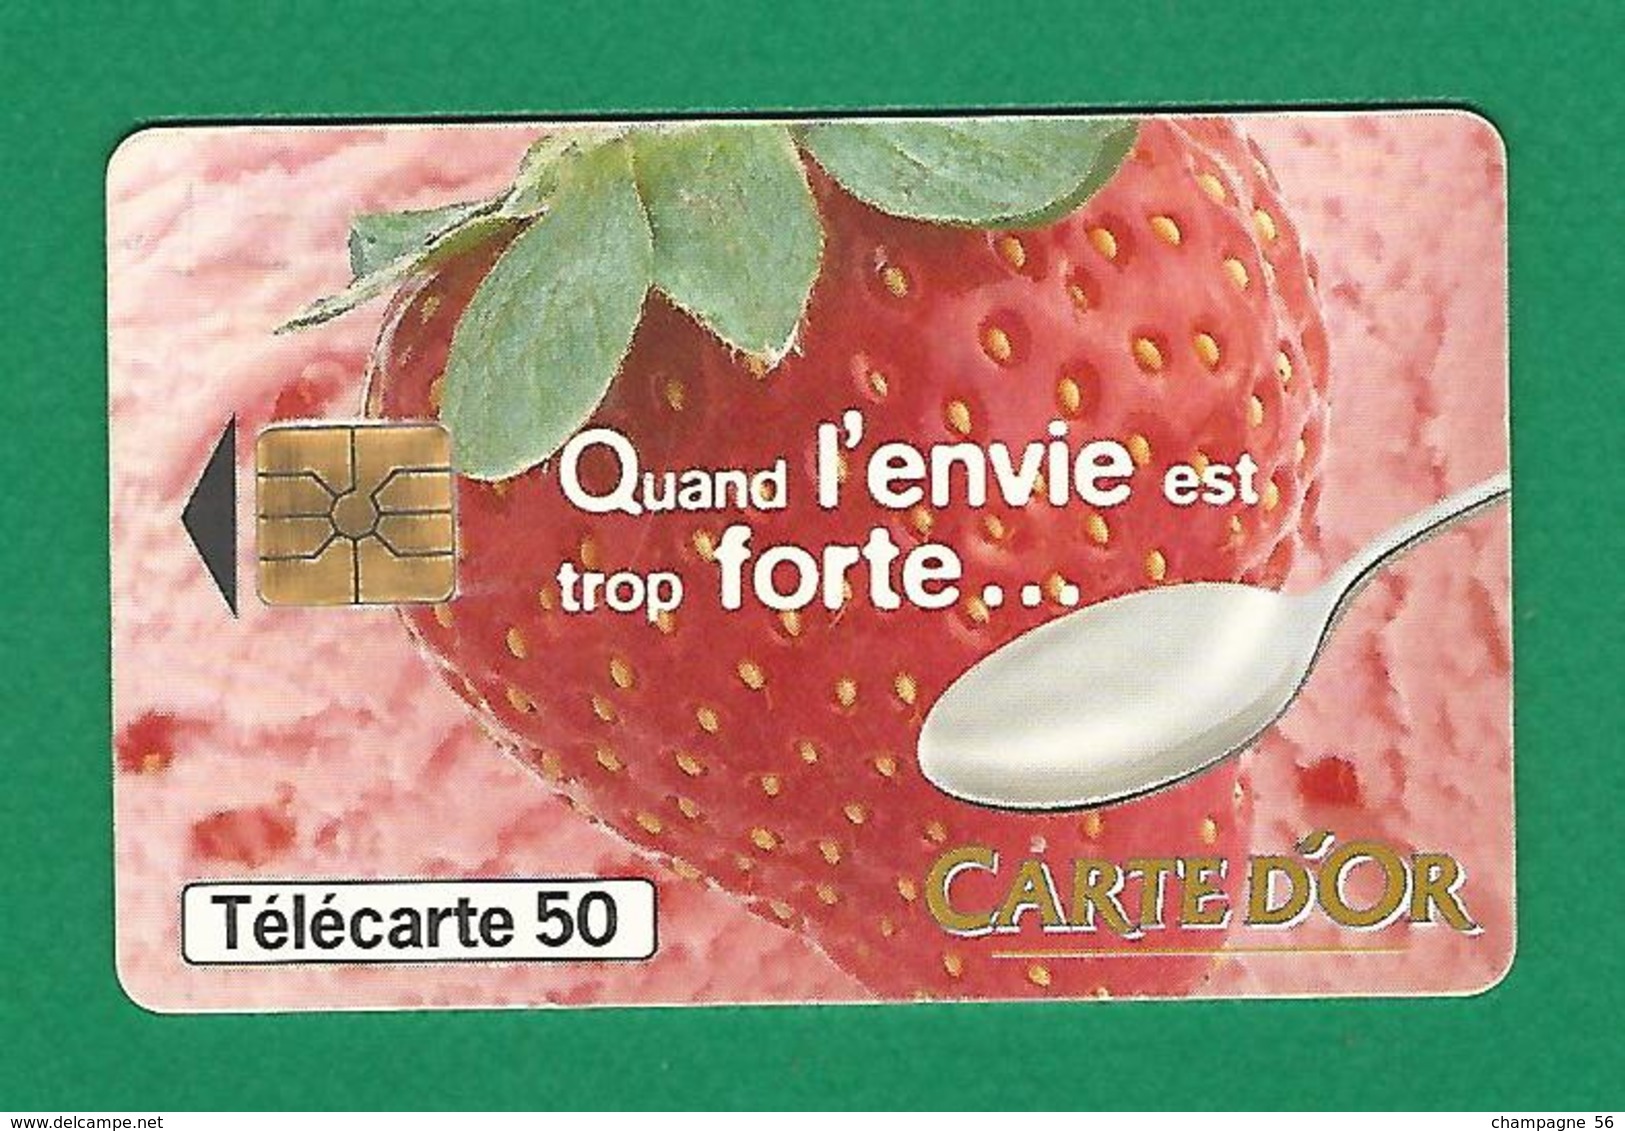 VARIÉTÉS 05 / 1997  CARTE D'OR   PUCE GEM1A   50 UNITÉS - Varietà